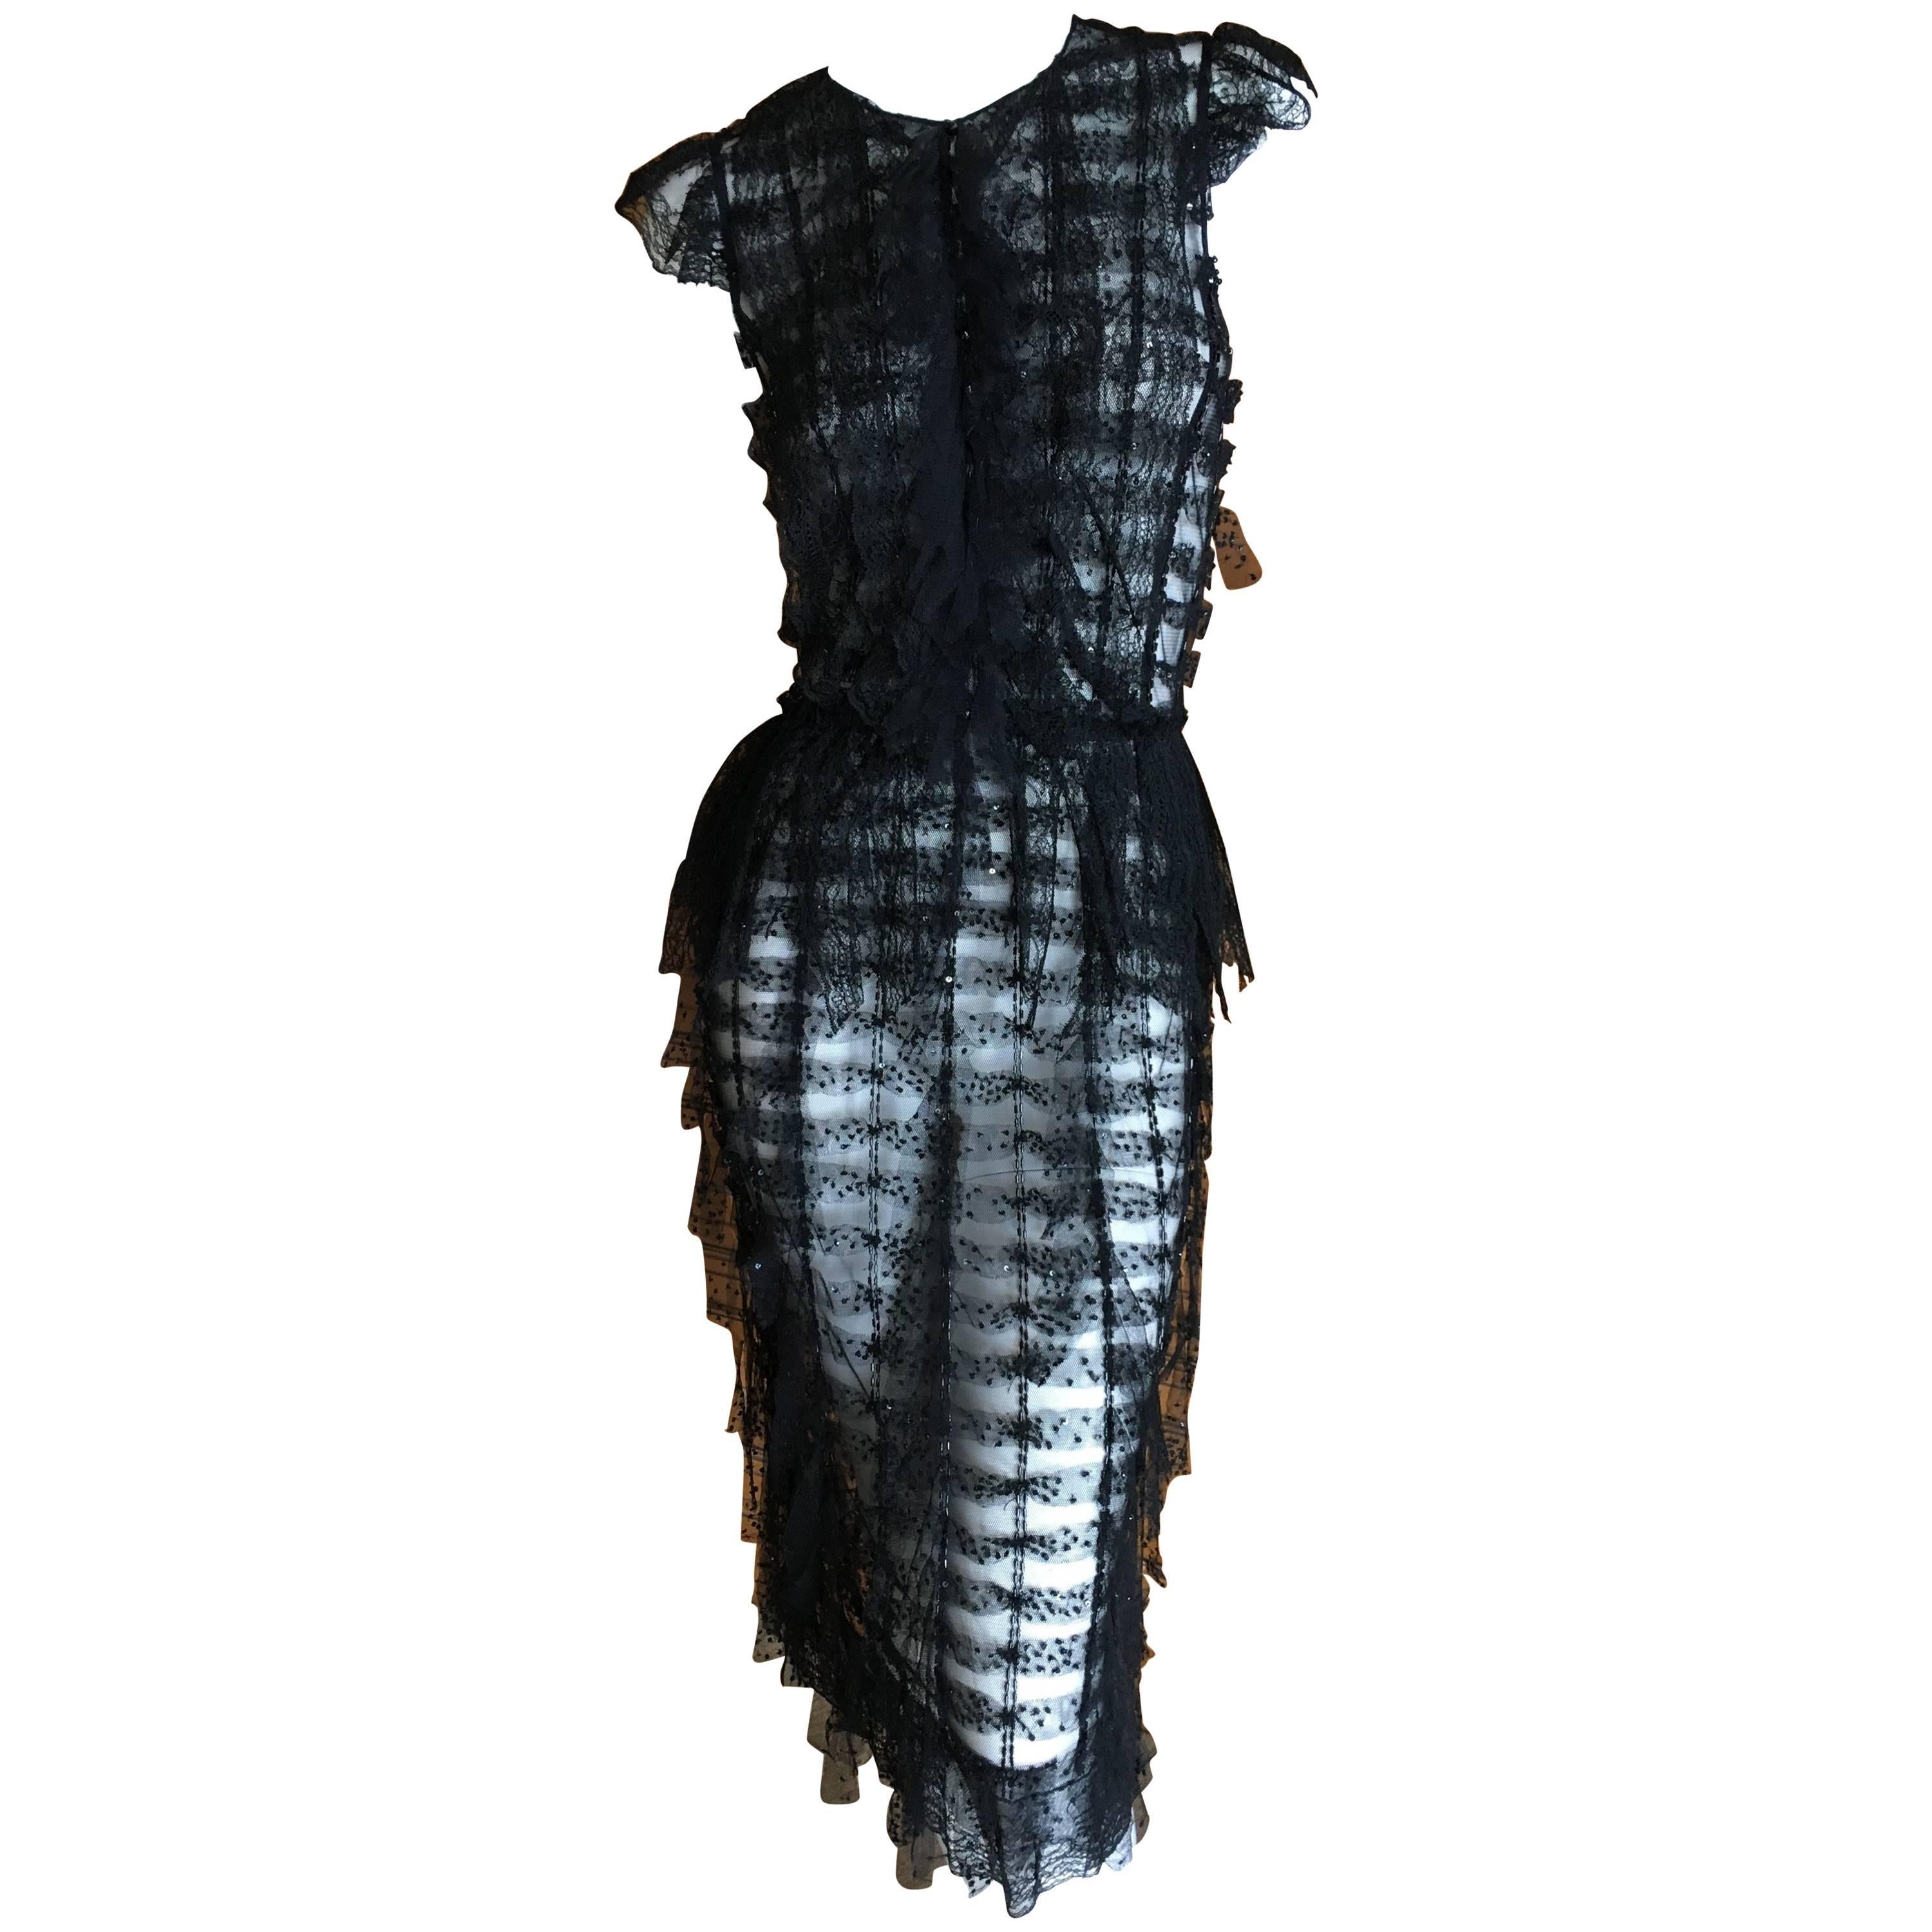 Oscar de la Renta Sheer Black Bugle Bead Embellished Cocktail Dress with Slip For Sale